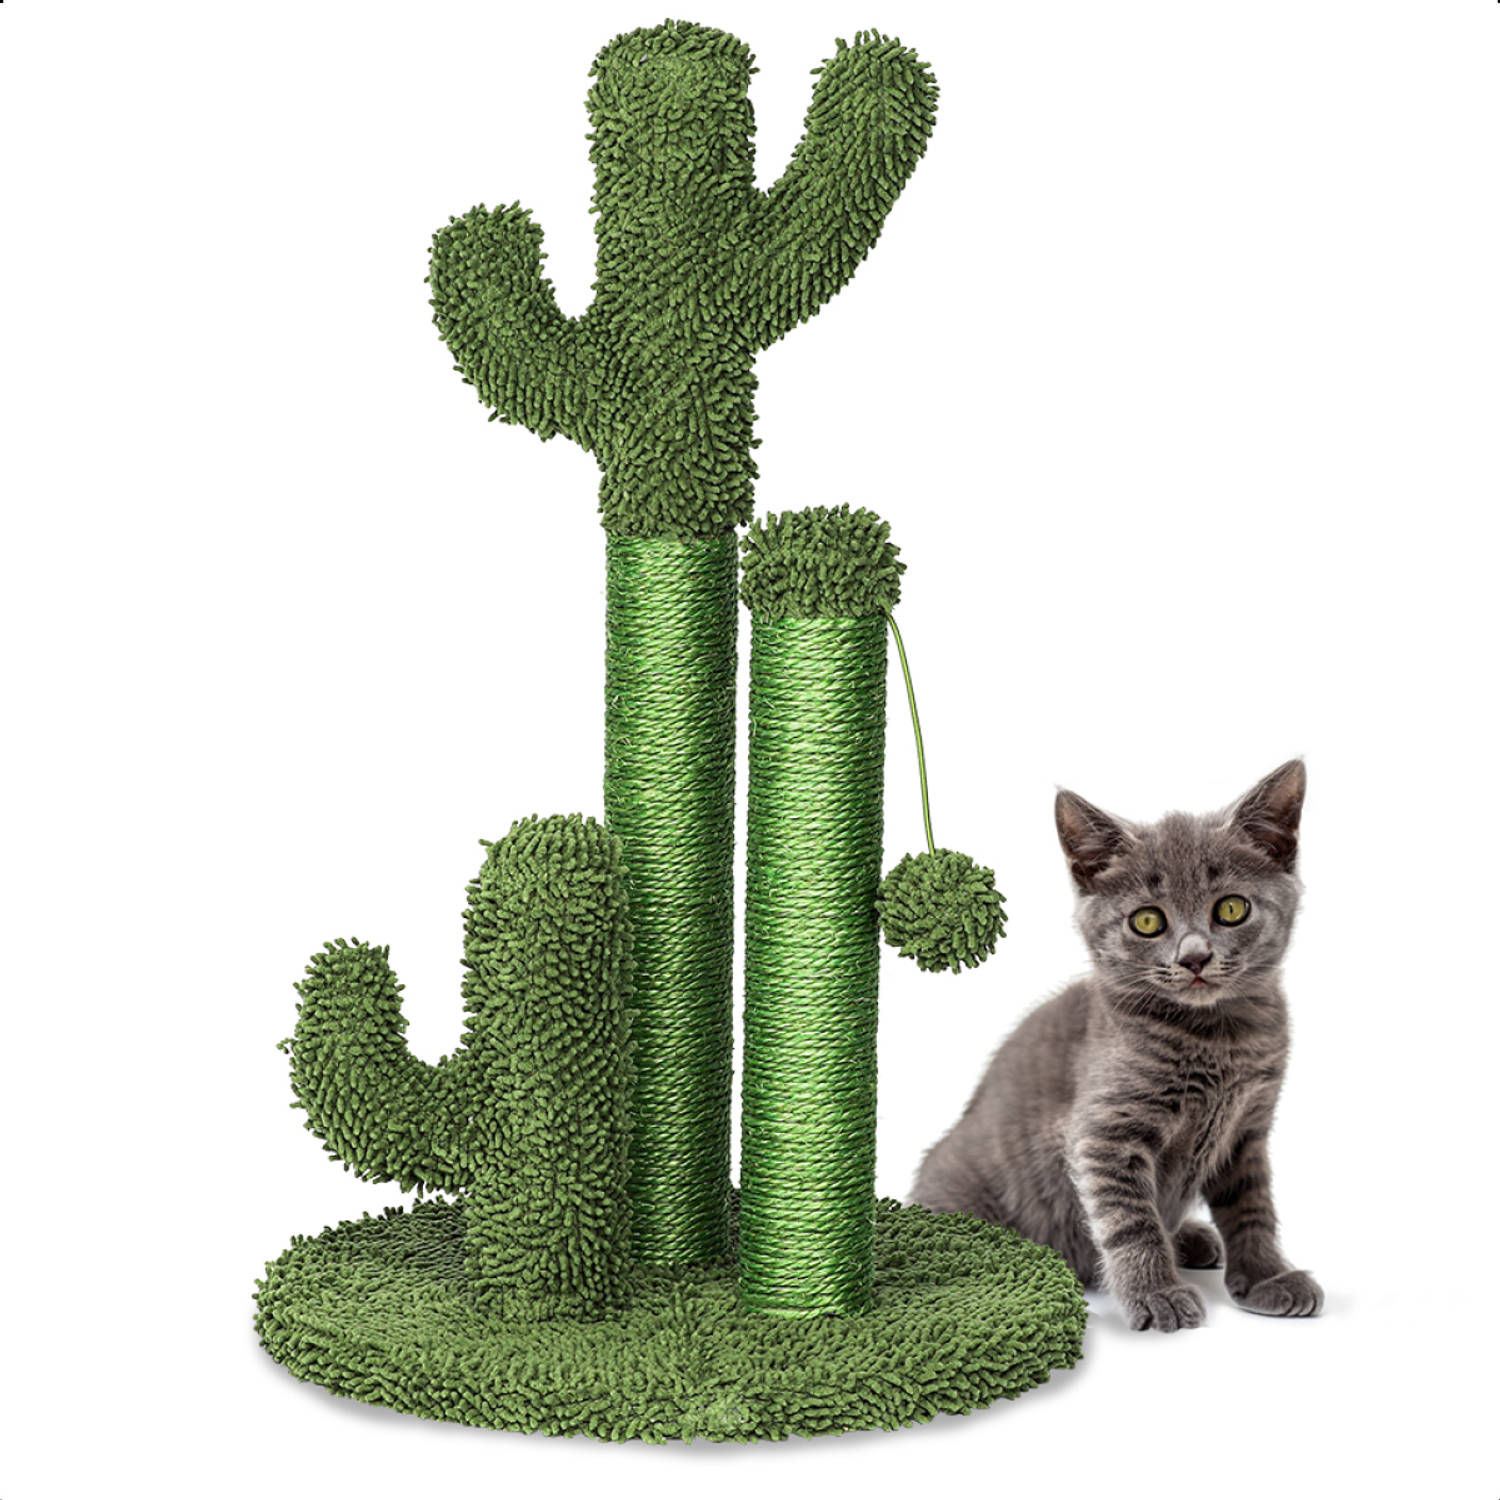 Gopets Krabpaal Cactus Cactus Krabpaal met Touw Krabplank modern design Krabmeubel met Speeltje 33 x